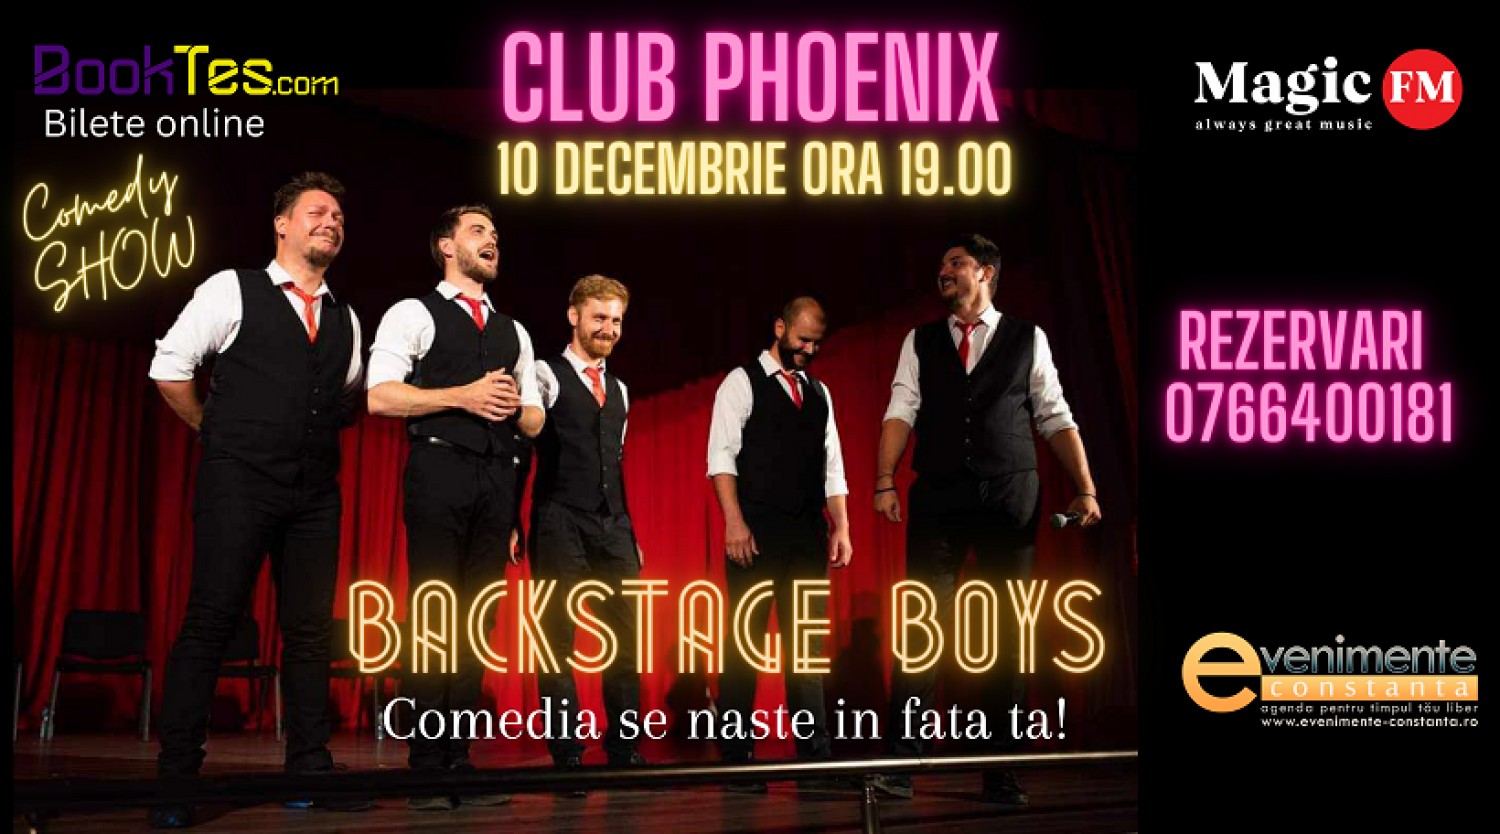 Comedy Show cu Backstage Boys pe 10 decembrie in Club Phoenix Constanta